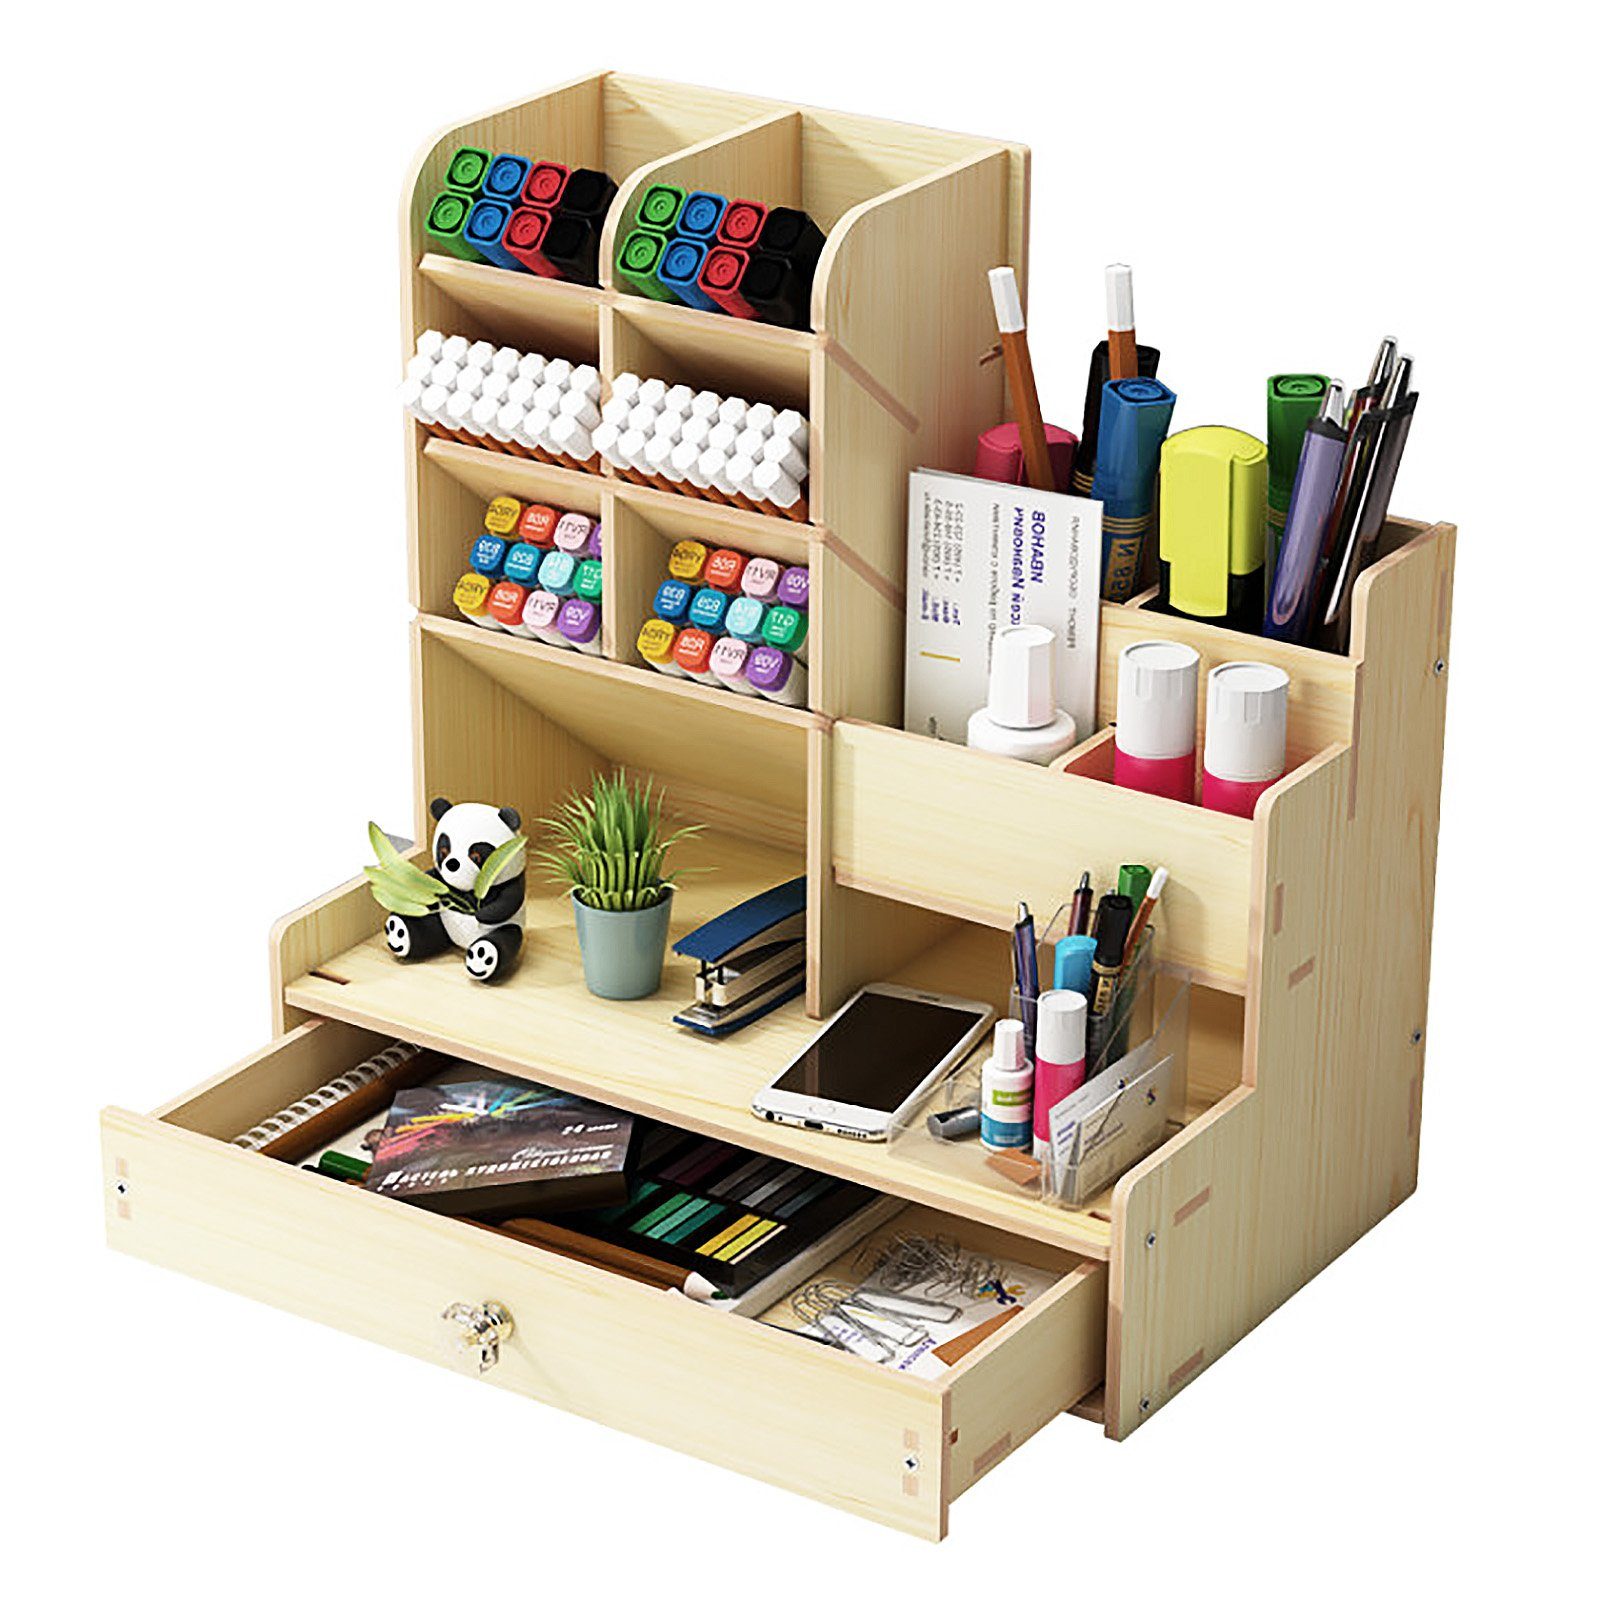 zggzerg Regal-Schreibtisch Große Aufbewahrungsbox für Schreibwaren mit Schubladen Weißer Ahorn